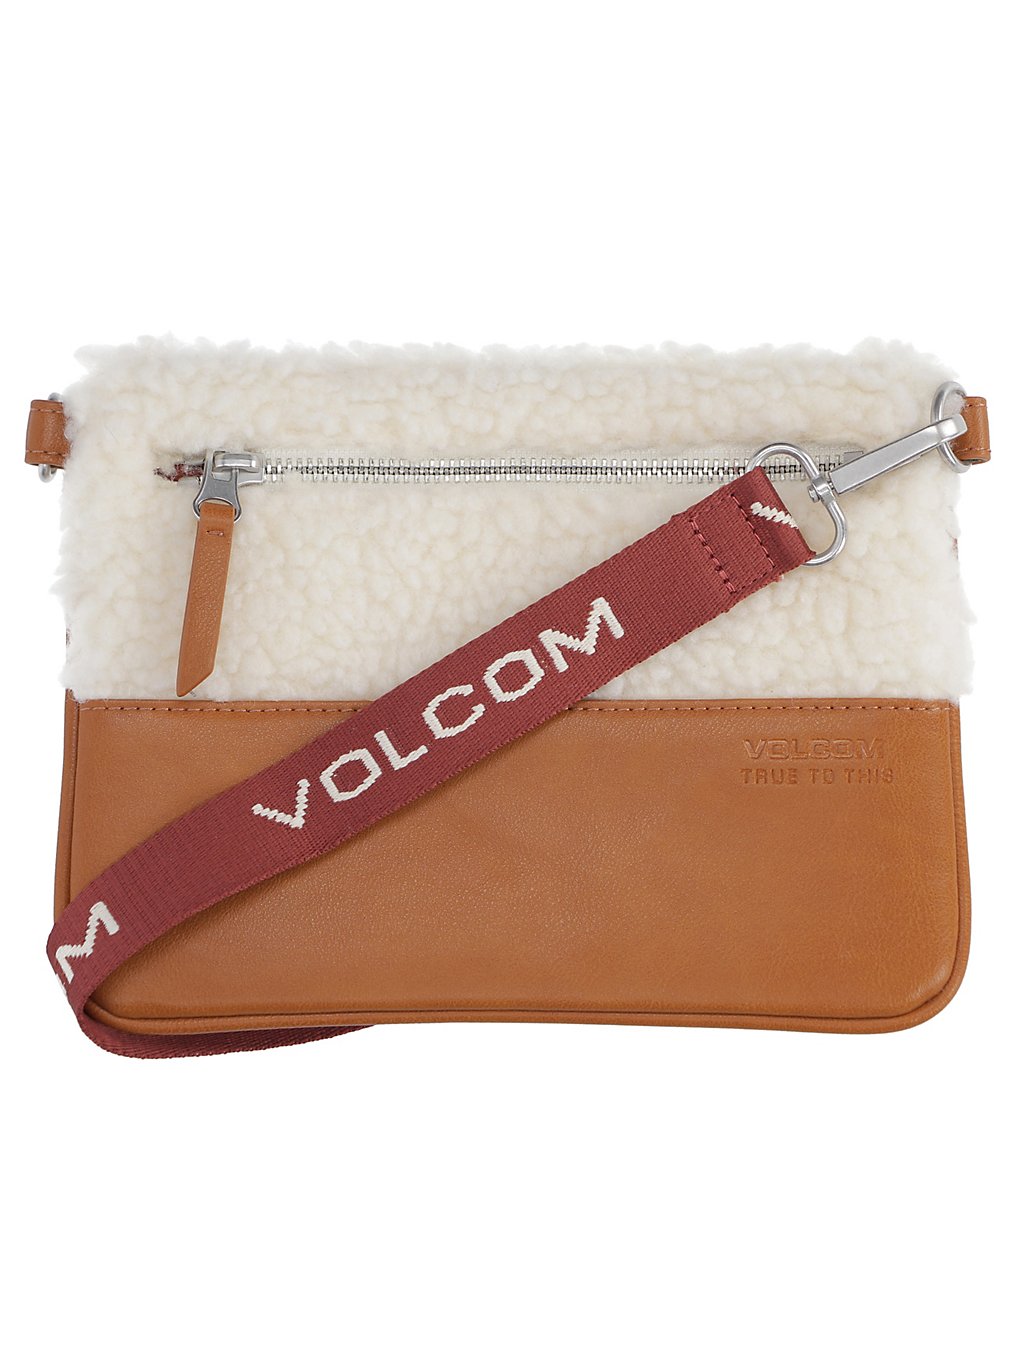 Volcom Ecovol Cross Bag marron